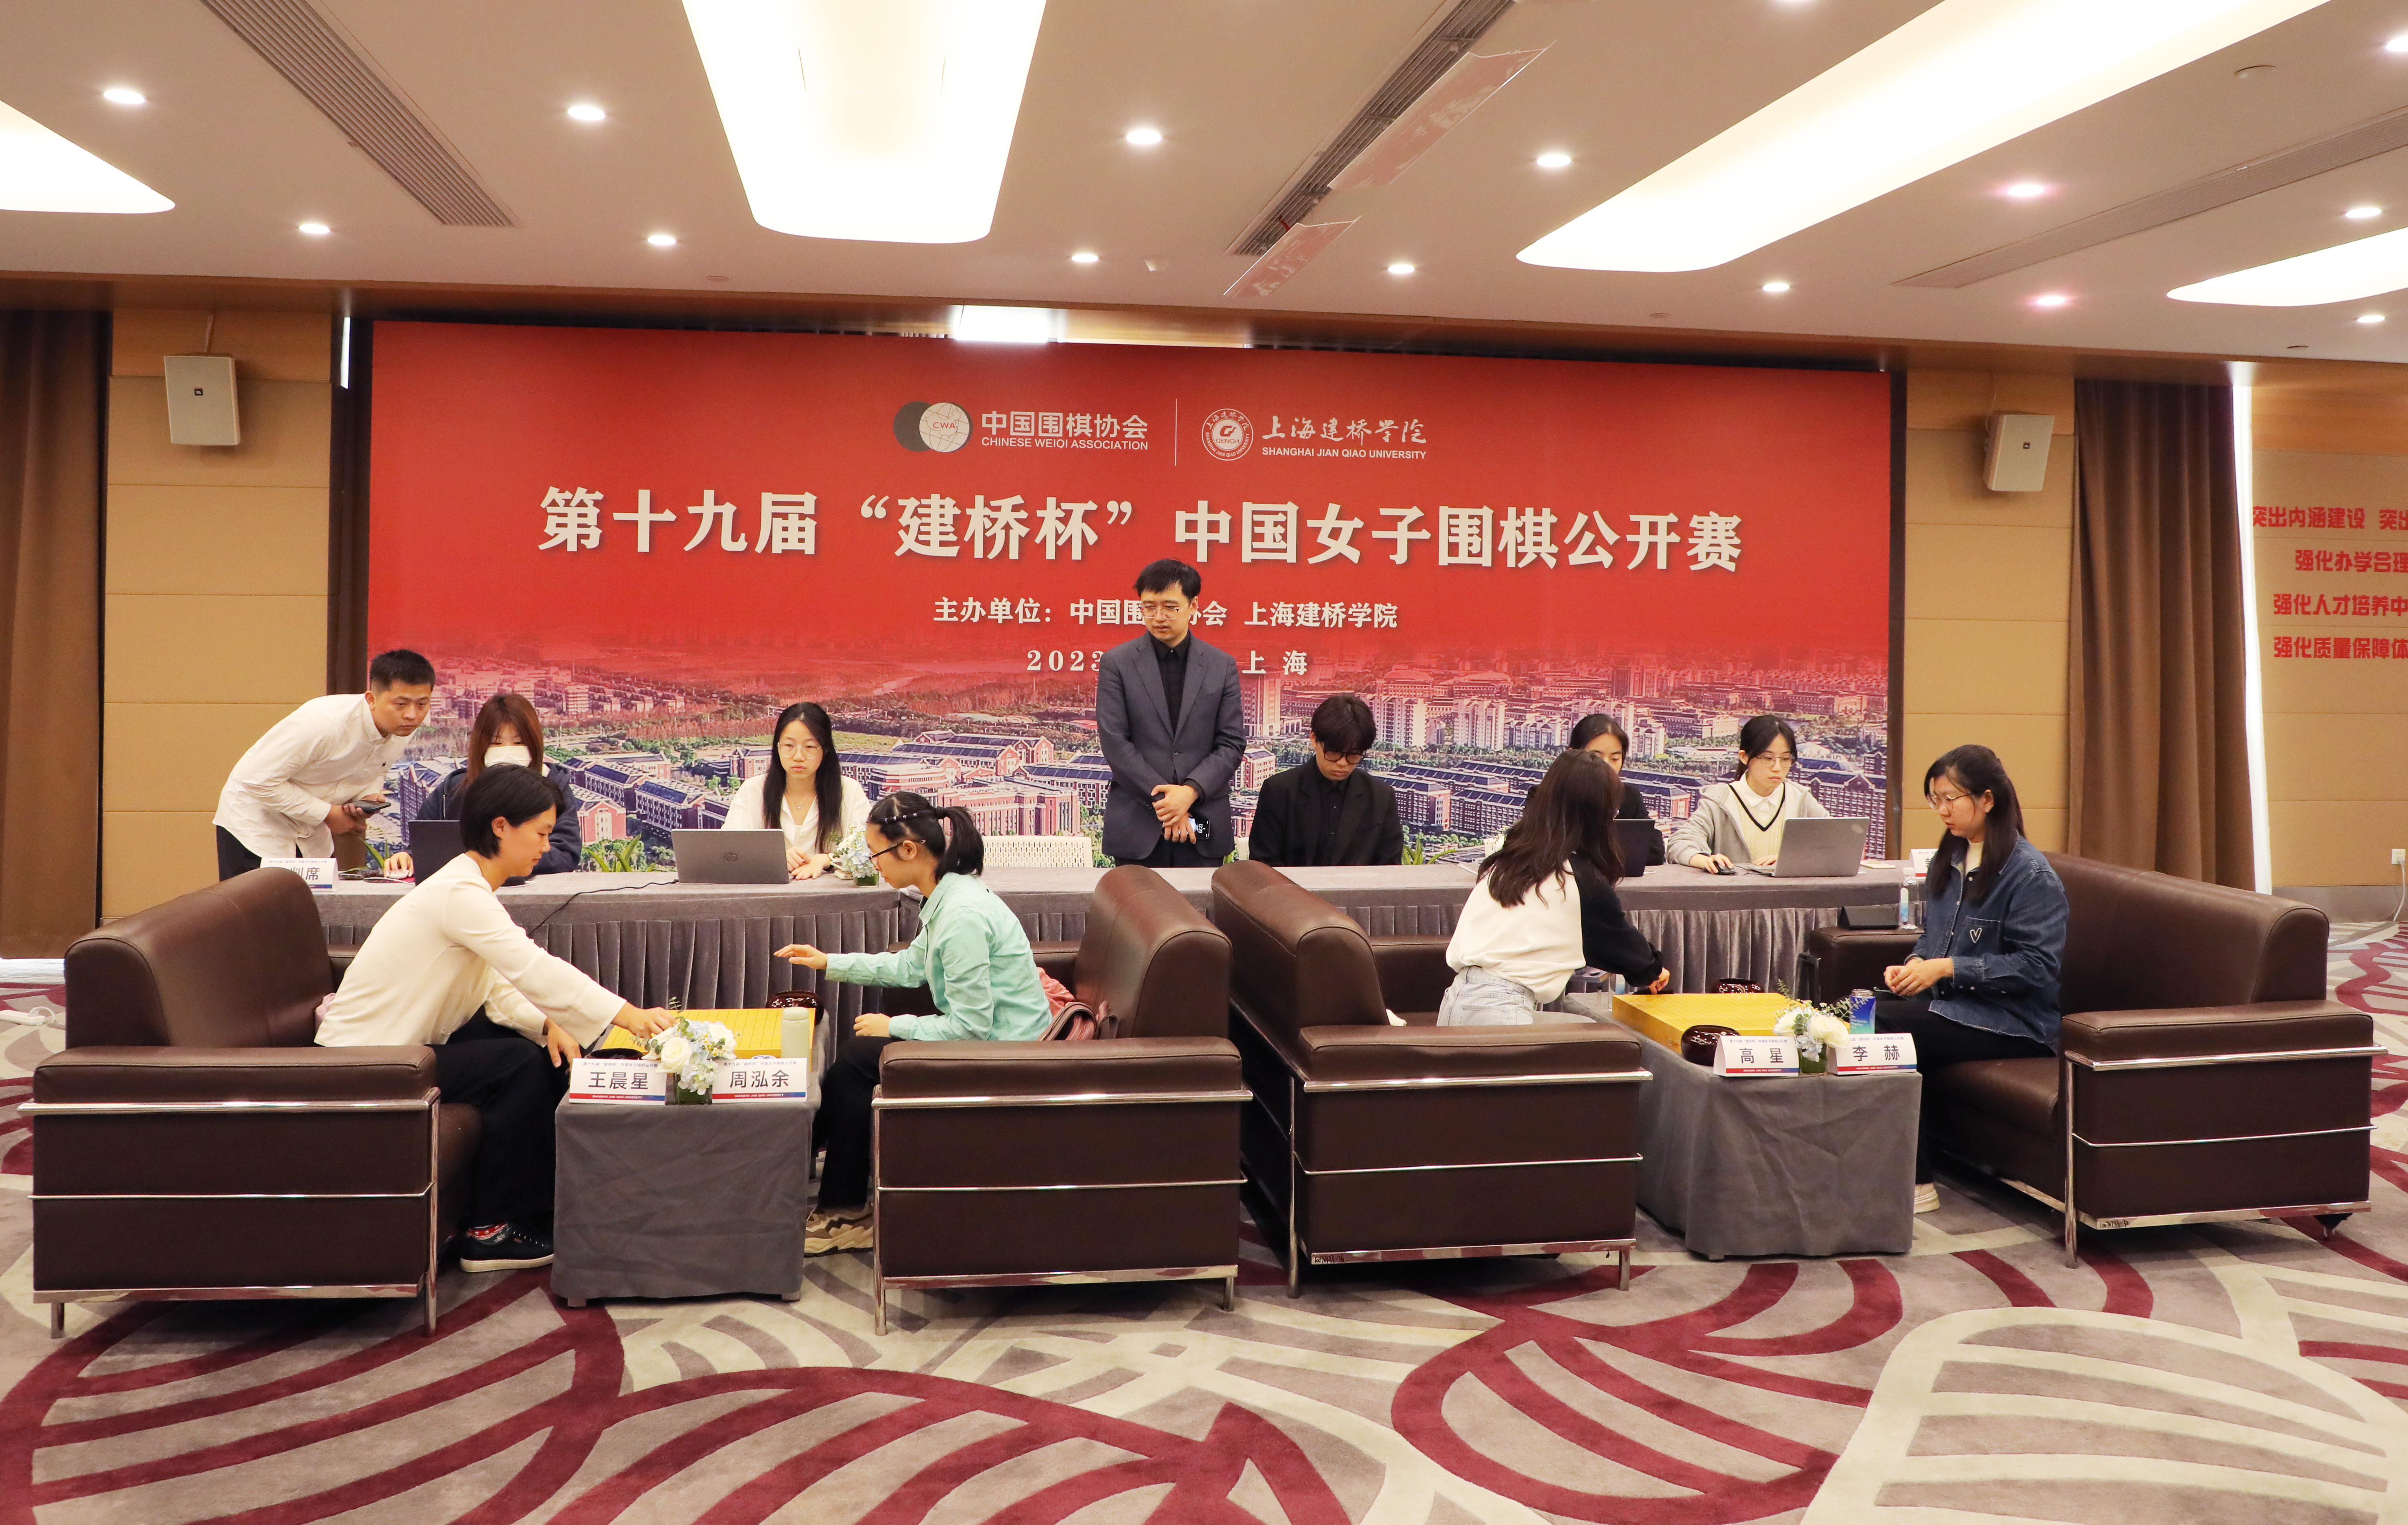 第19届建桥杯中国女子围棋公开赛半决赛在上海建桥学院举行